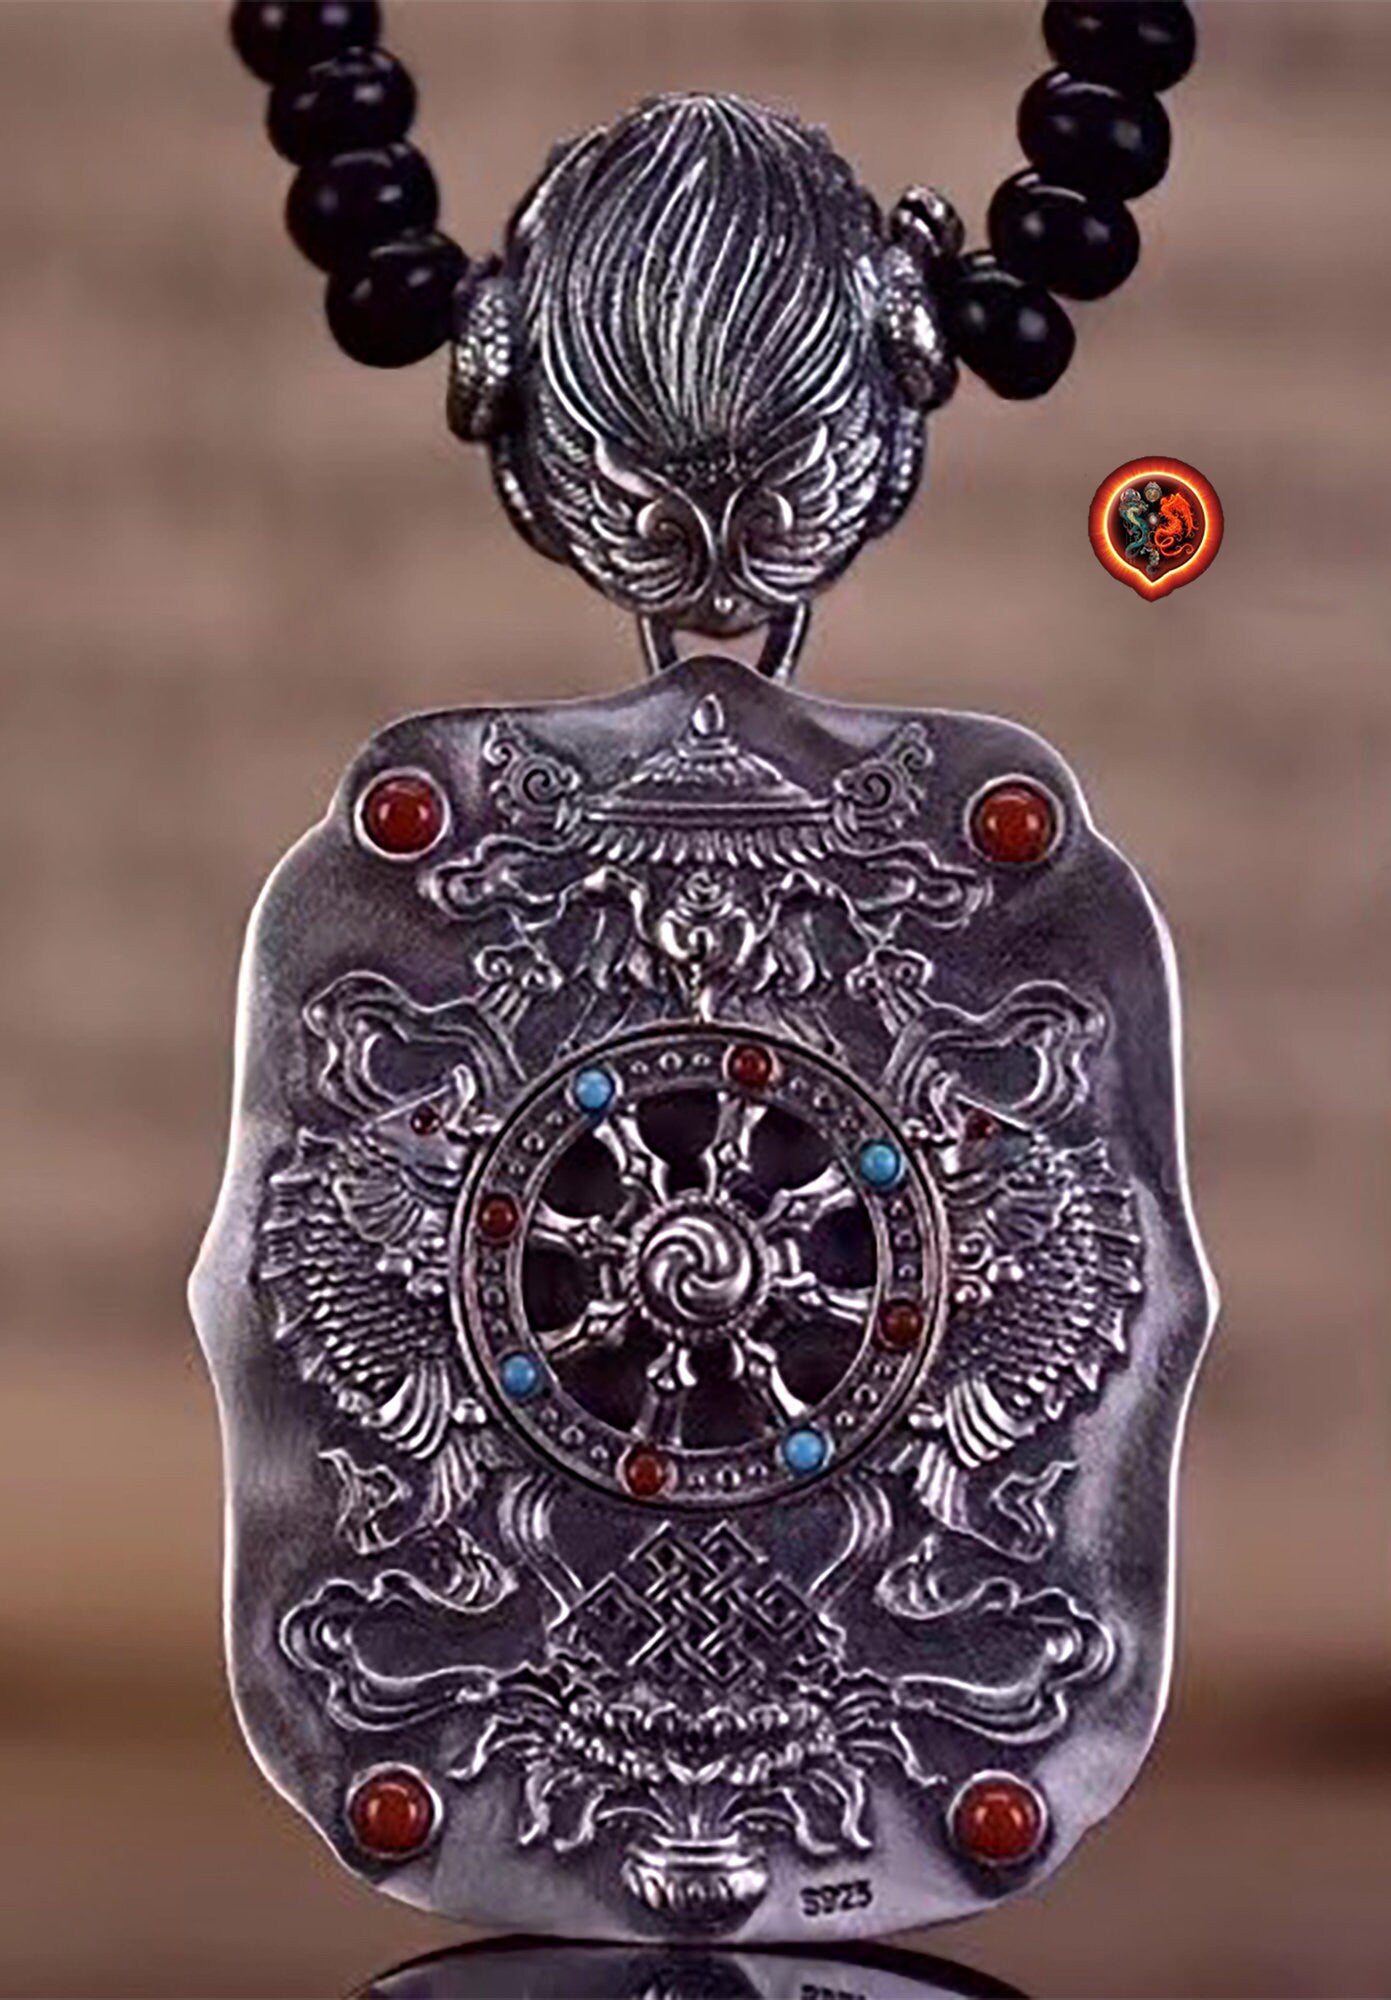 pendentif amulette de protection bouddhiste Bouddha Vairocana mala de prière et méditation 108 perles, argent 925 or 18K bélière Garuda - obsidian dragon